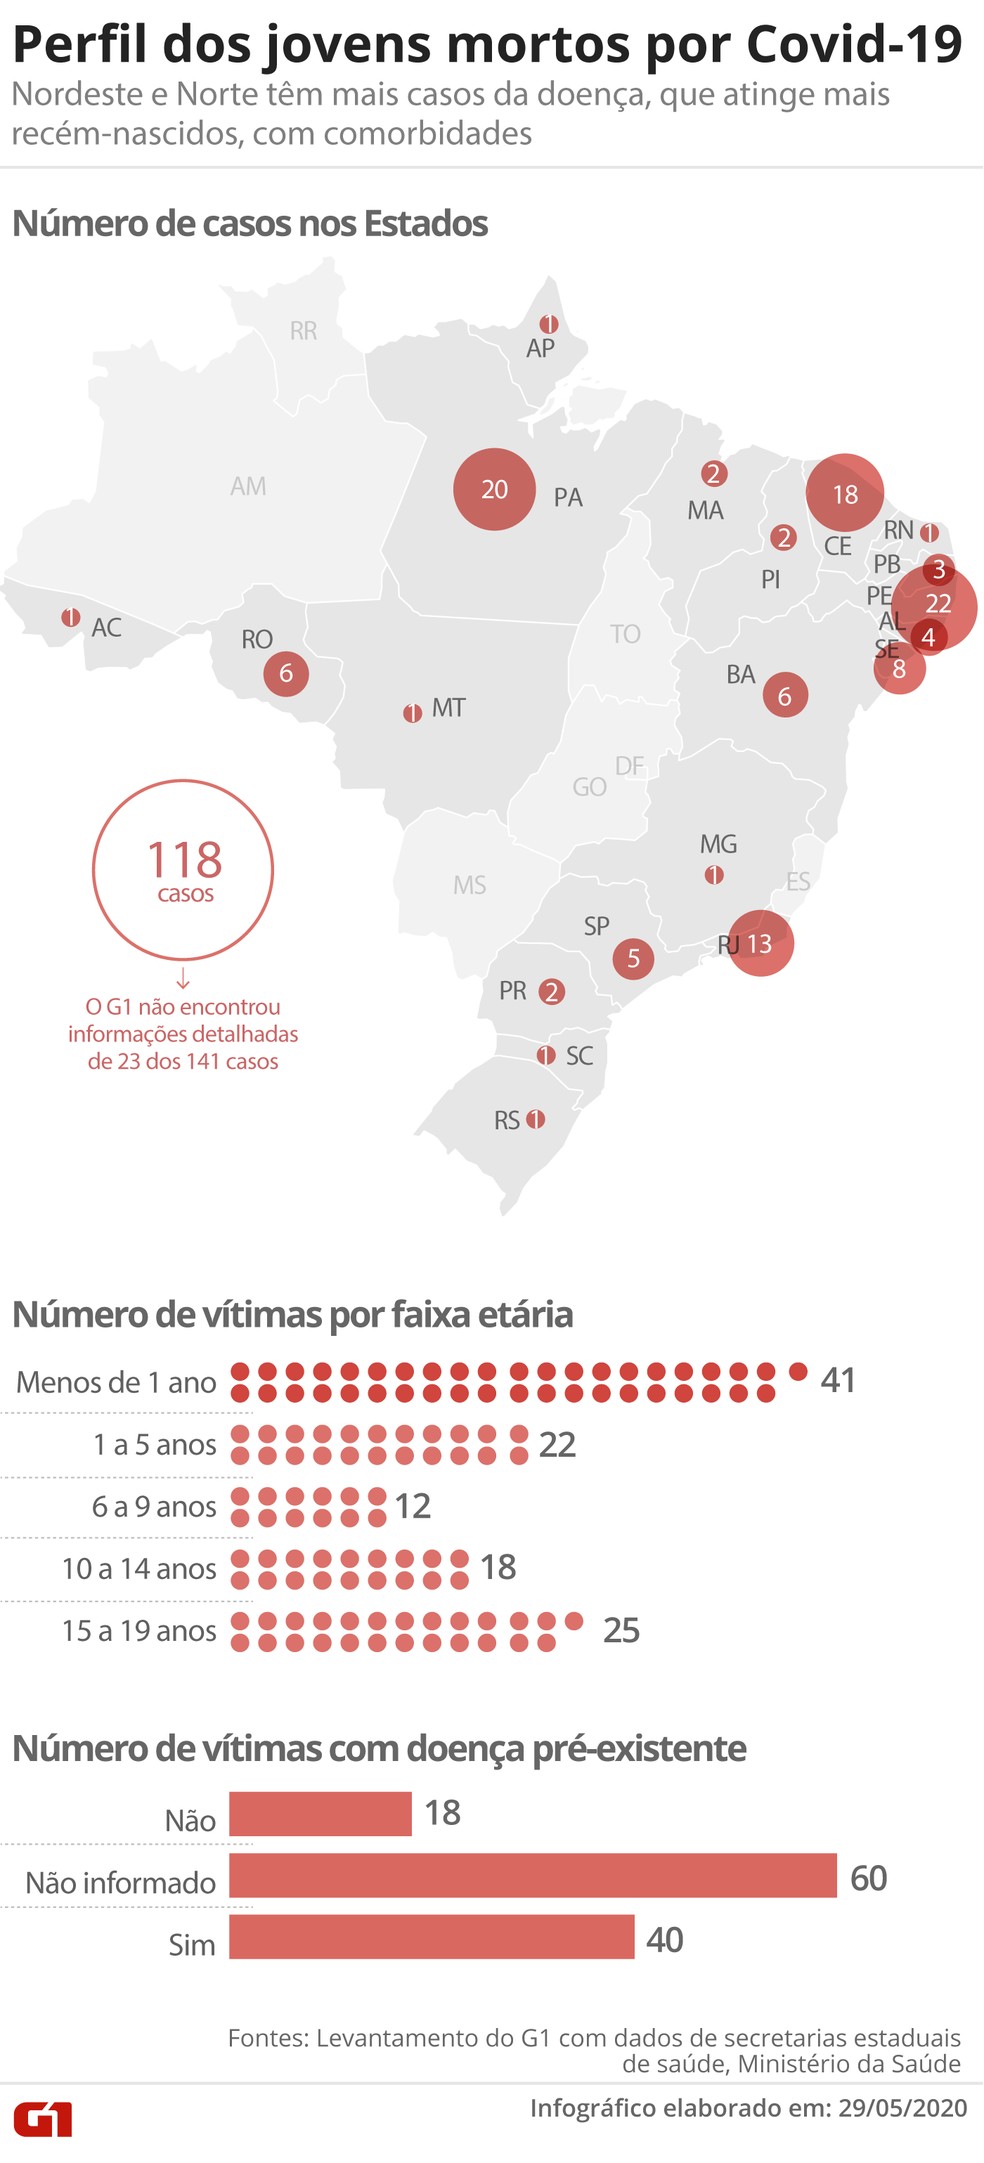 Perfil dos jovens até 19 anos mortos por Covid-19 no Brasil — Foto: Aparecido Gonçalves/G1